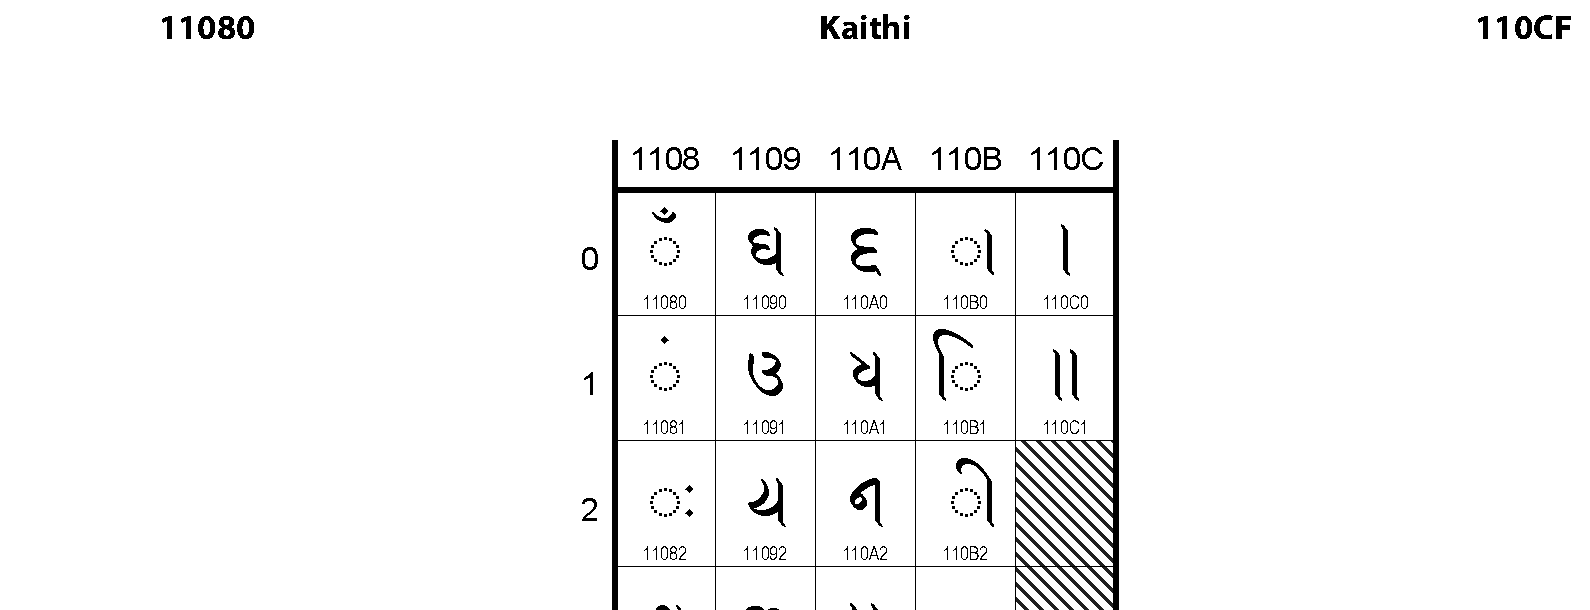 Unicode - Kaithi